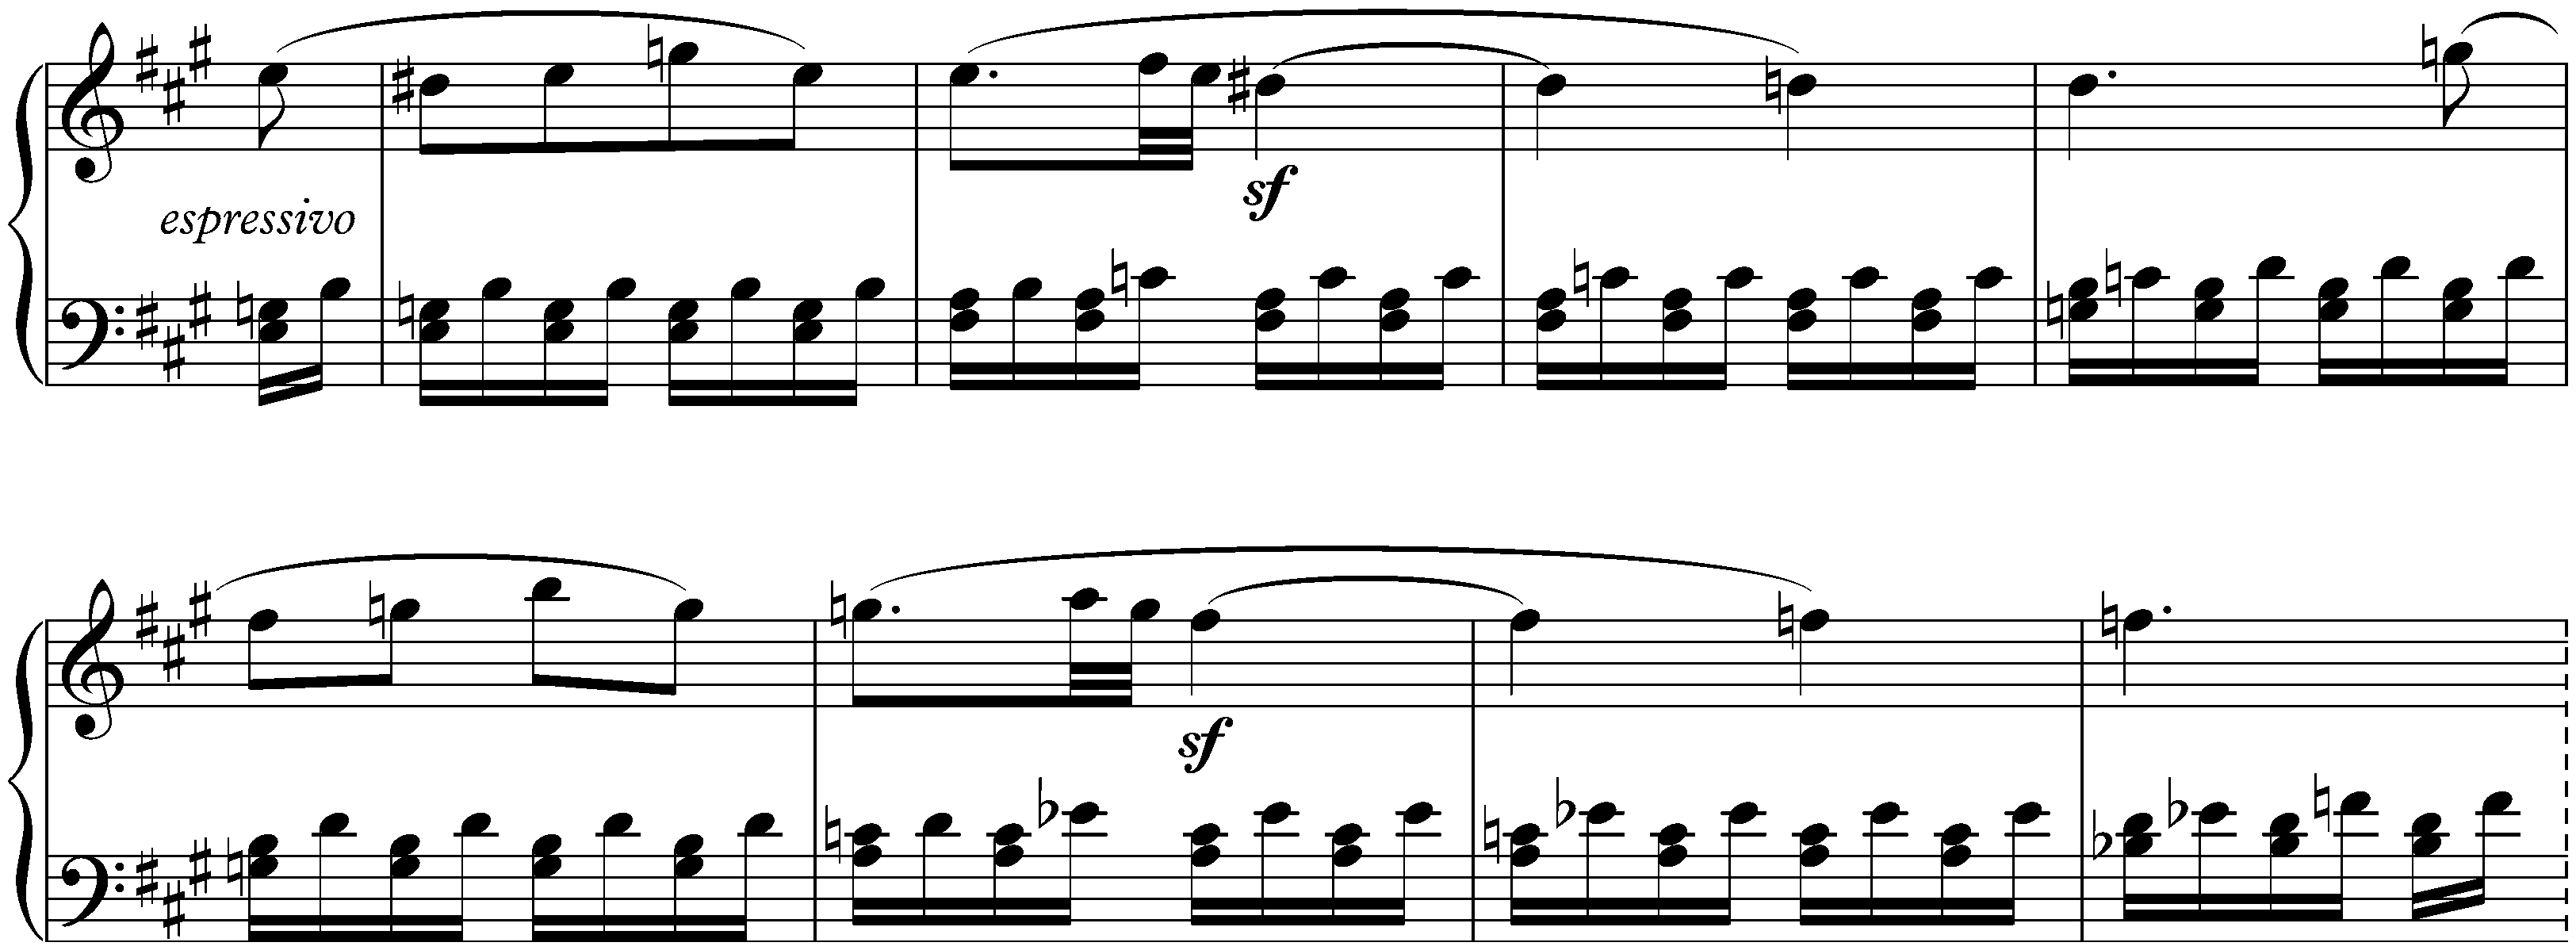 Sonata no. 2 in A major, op. 2 no. 2; 1. Allegro vivace